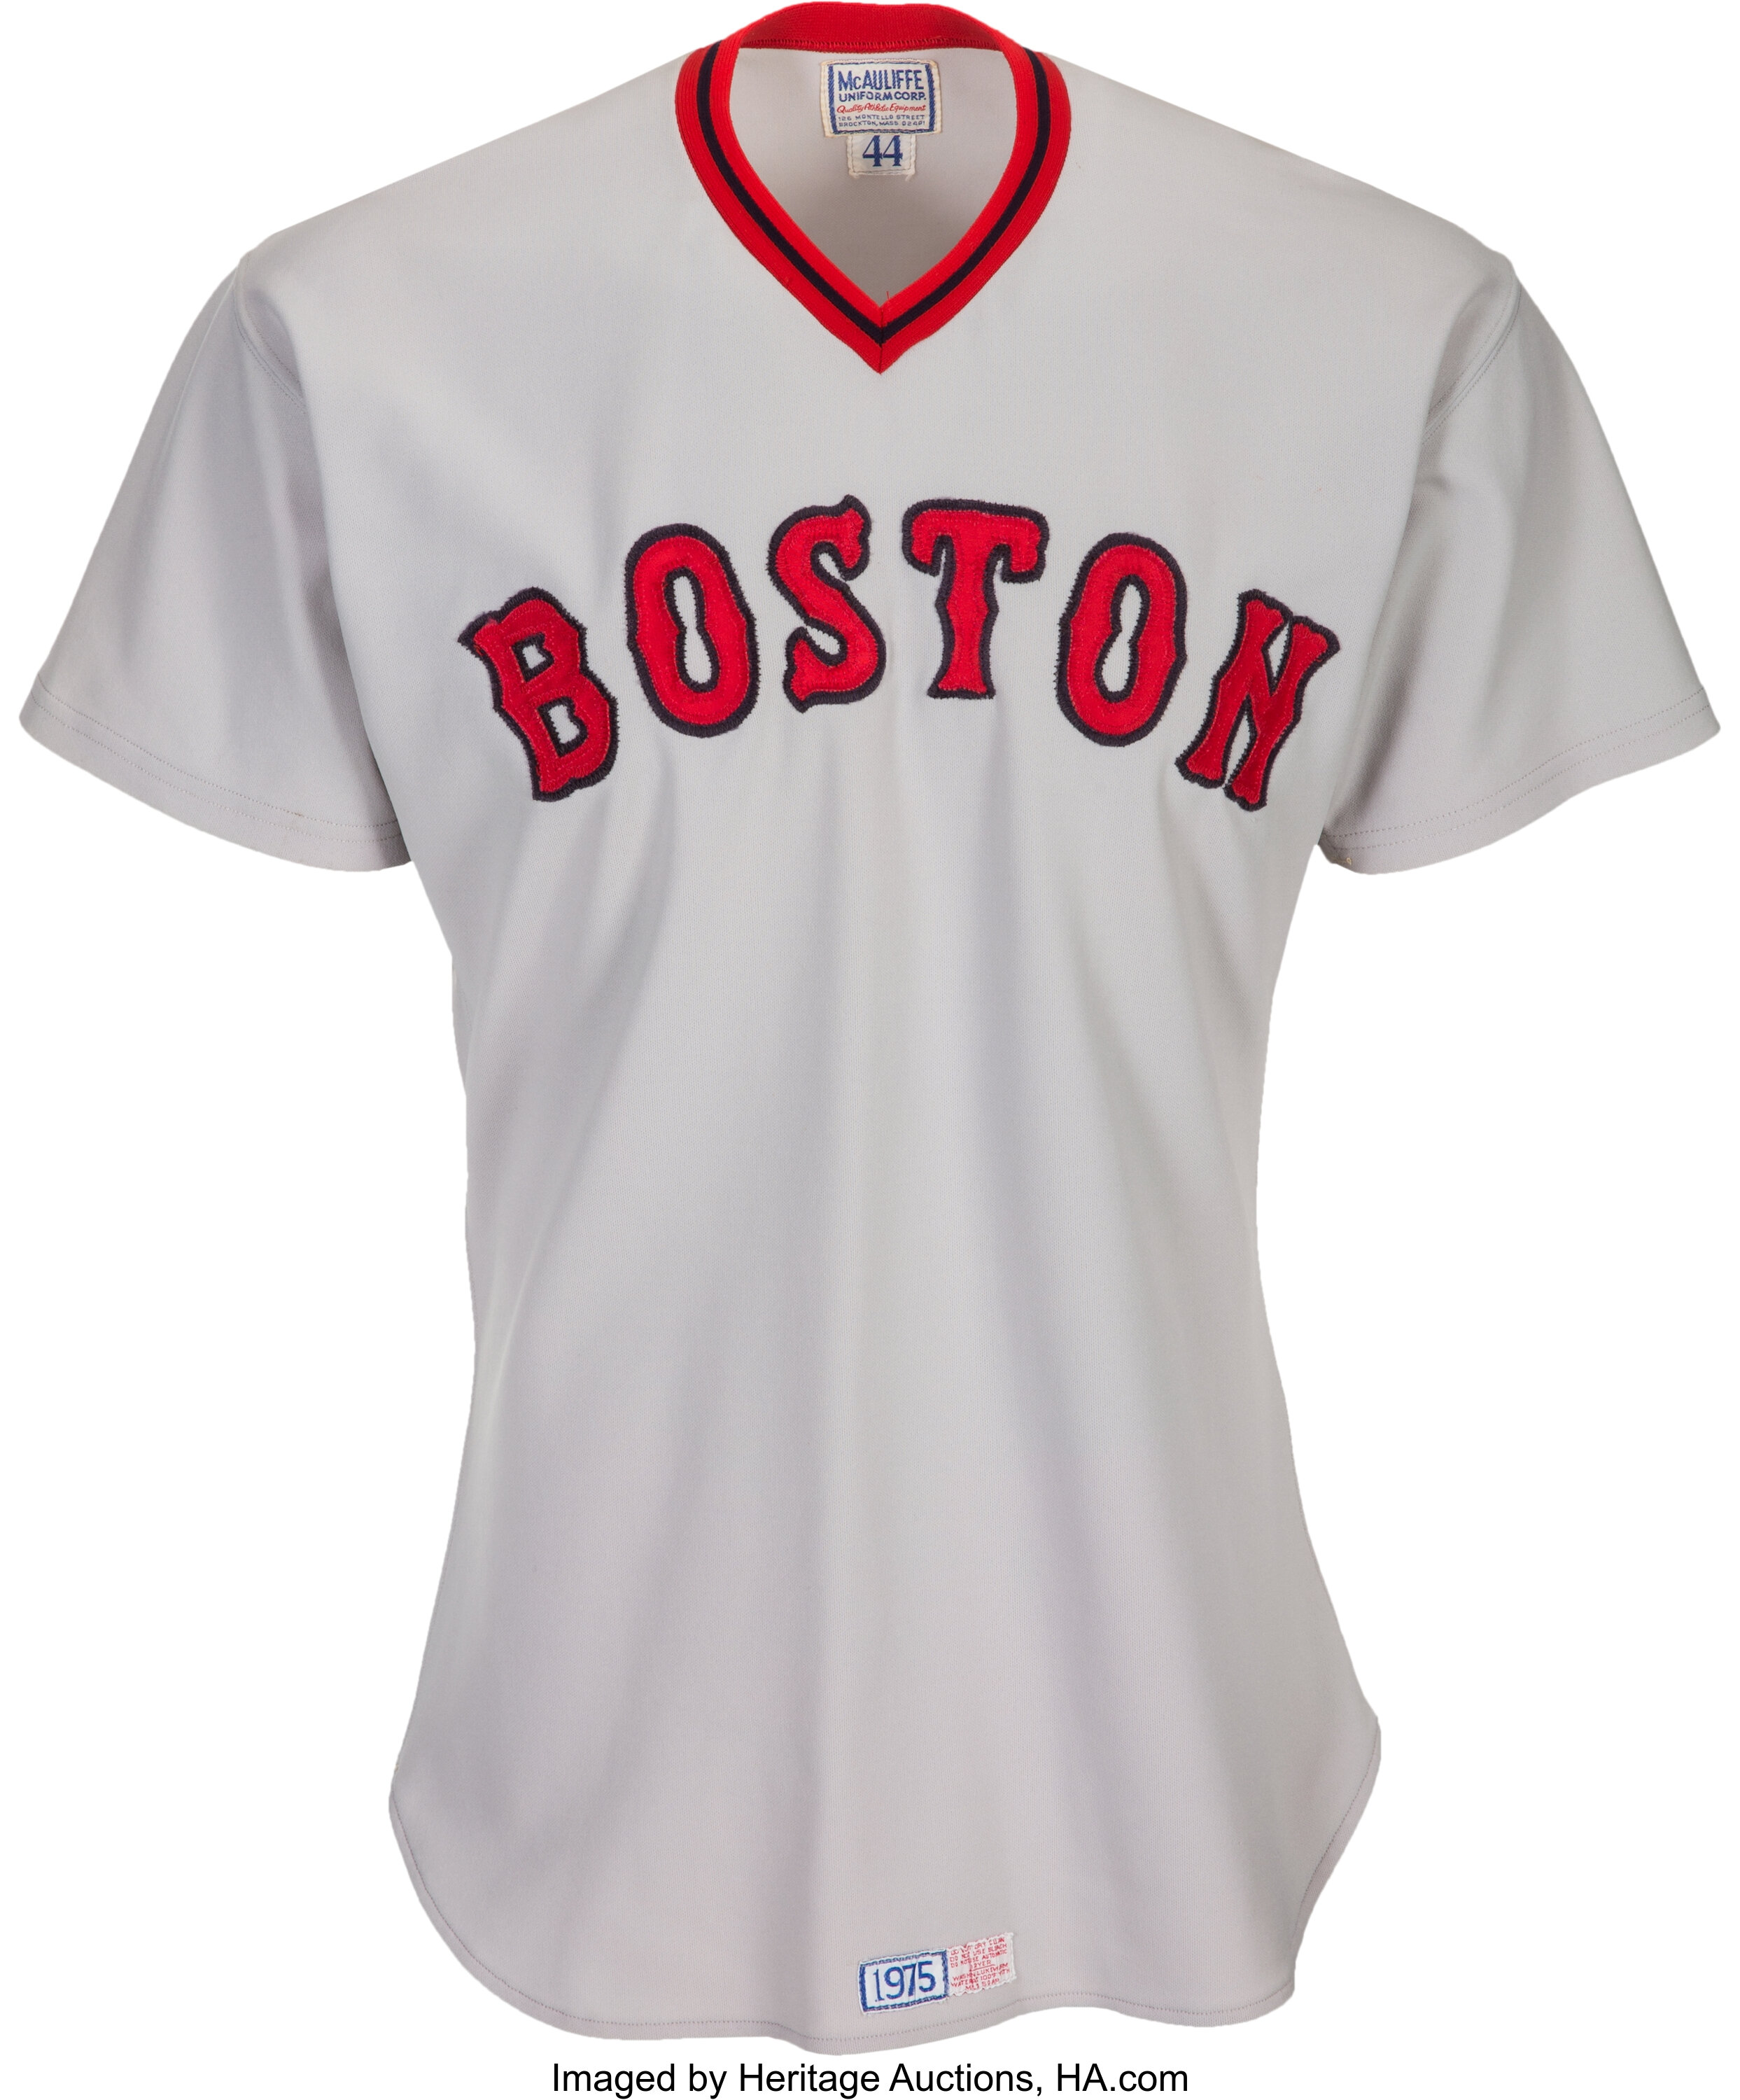 Boston Red Sox Personalized Baseball Jersey Shirt 183  Baseball jersey  shirt, Baseball jerseys, Jersey shirt